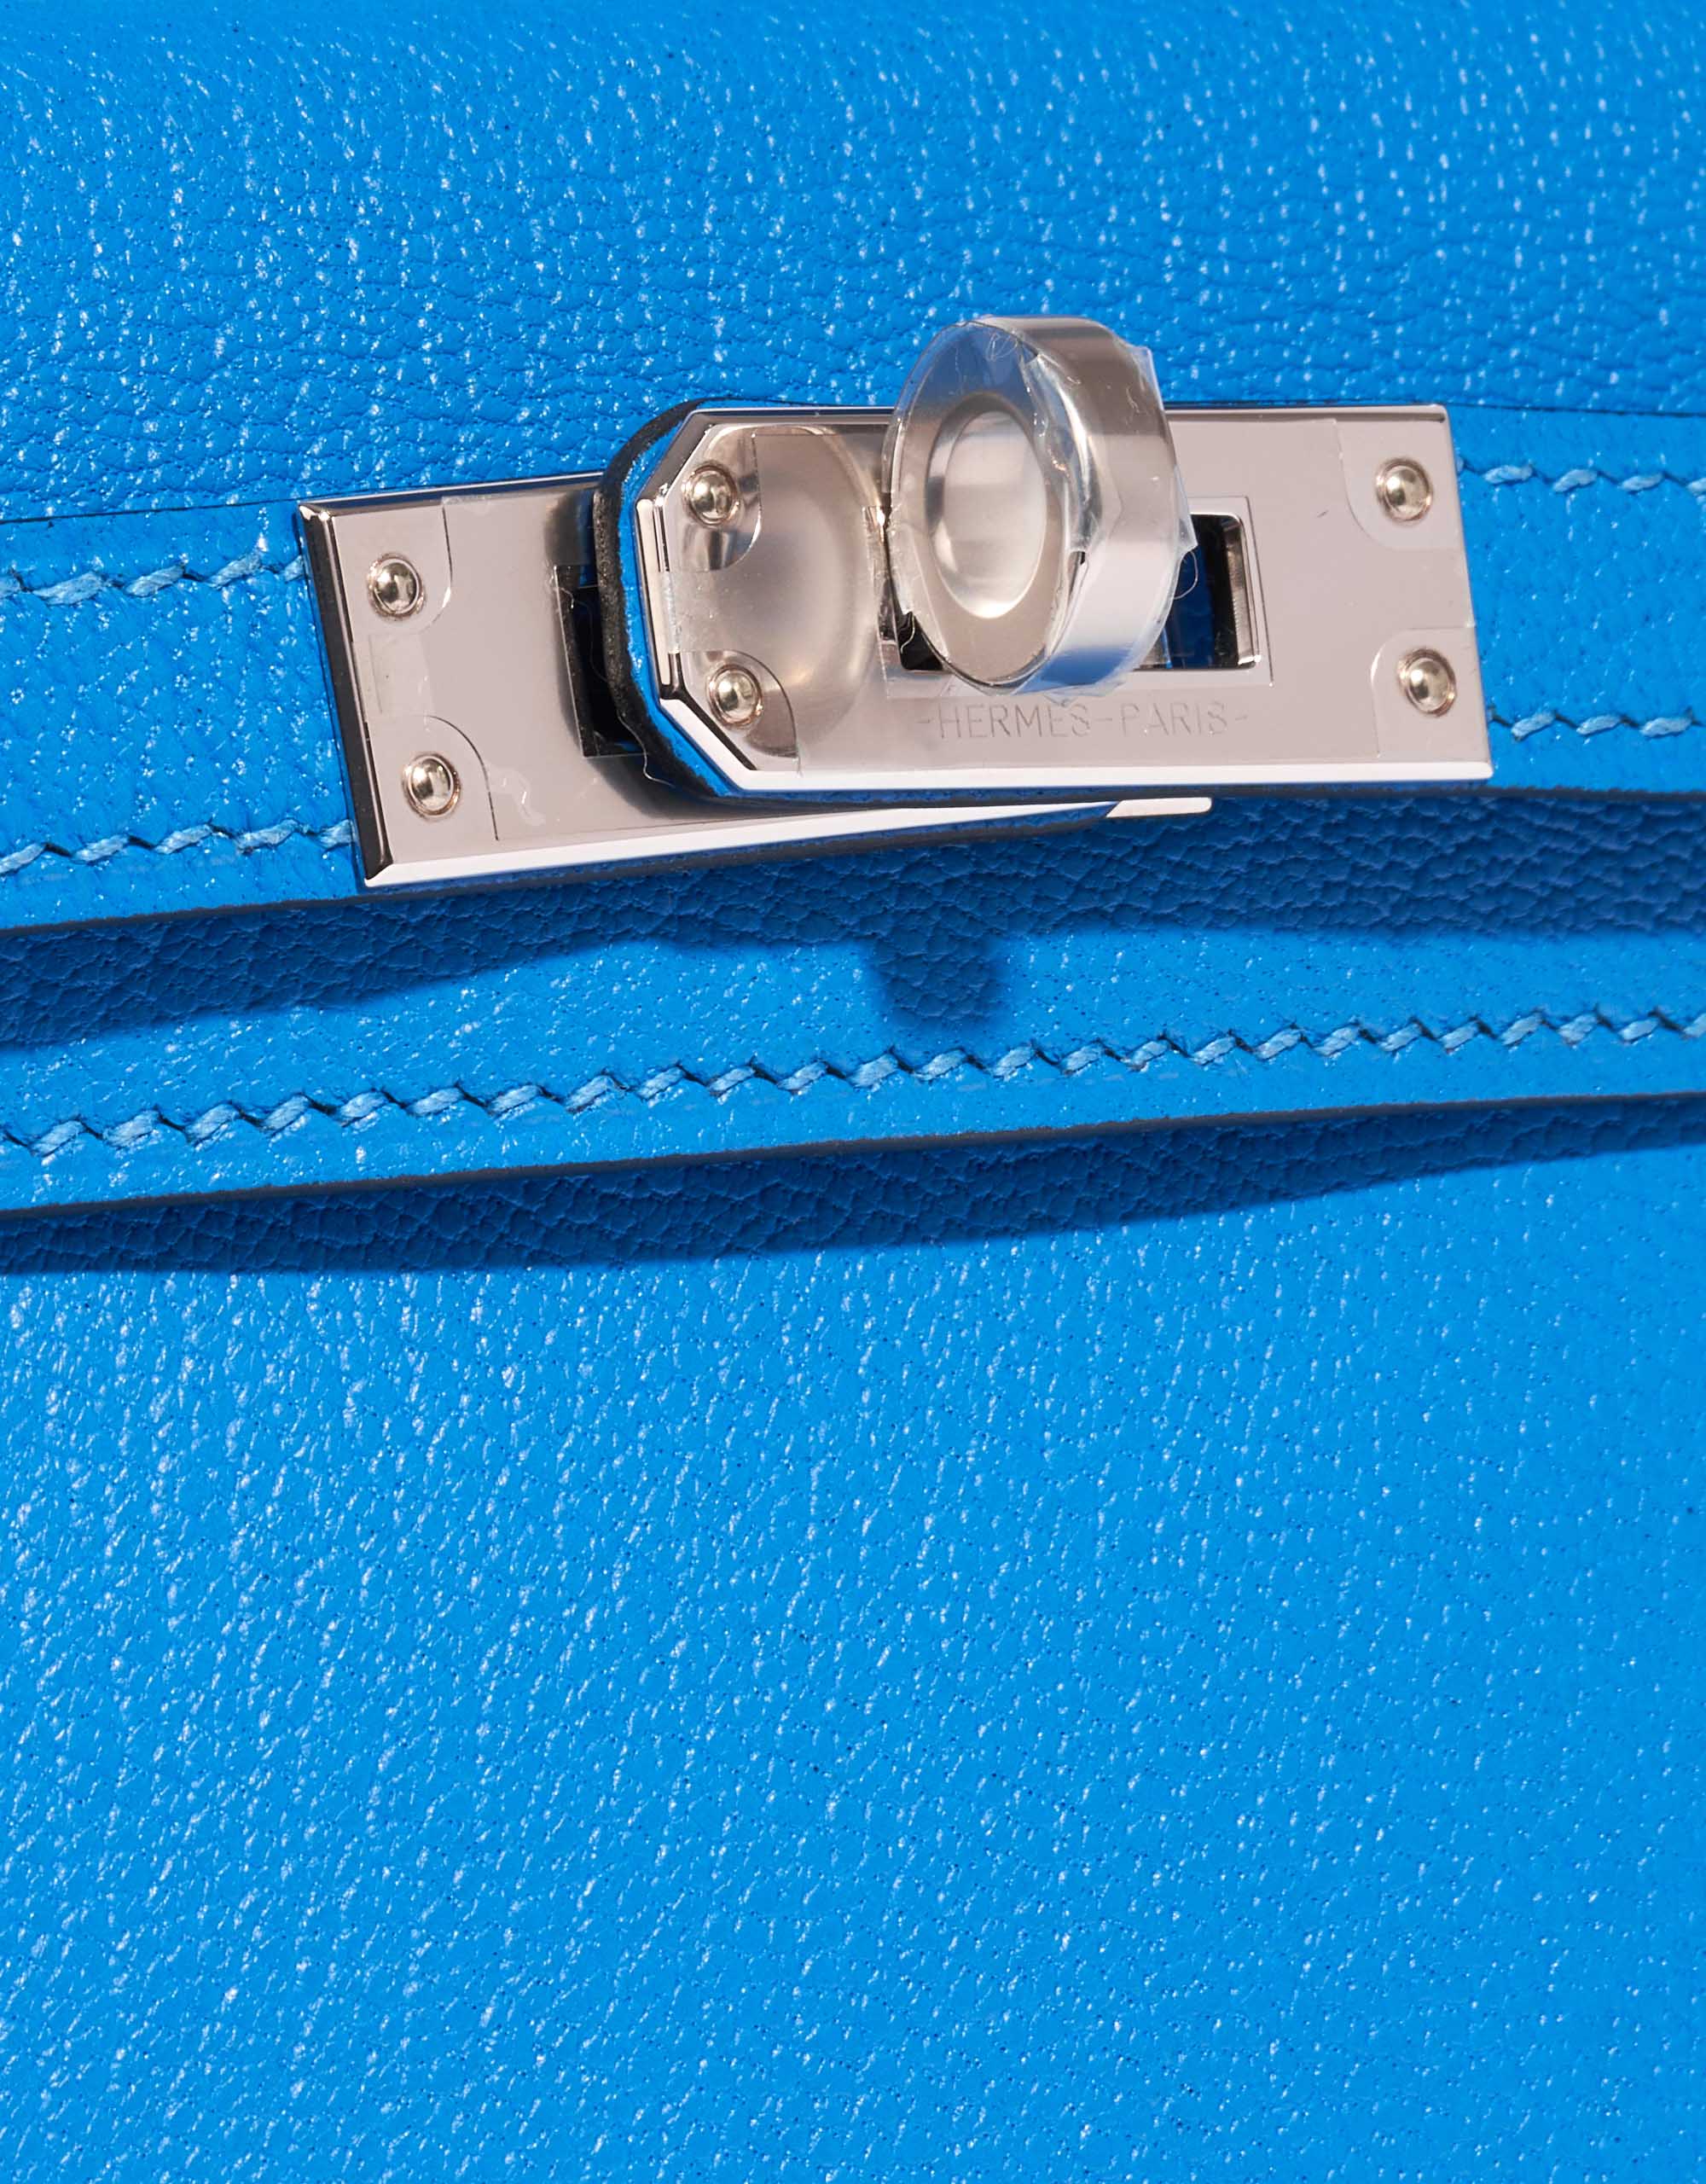 Gebrauchte Hermès Tasche Kelly Mini Chèvre Mysore Blau Hydra Blau Verschlusssystem | Verkaufen Sie Ihre Designer-Tasche auf Saclab.com